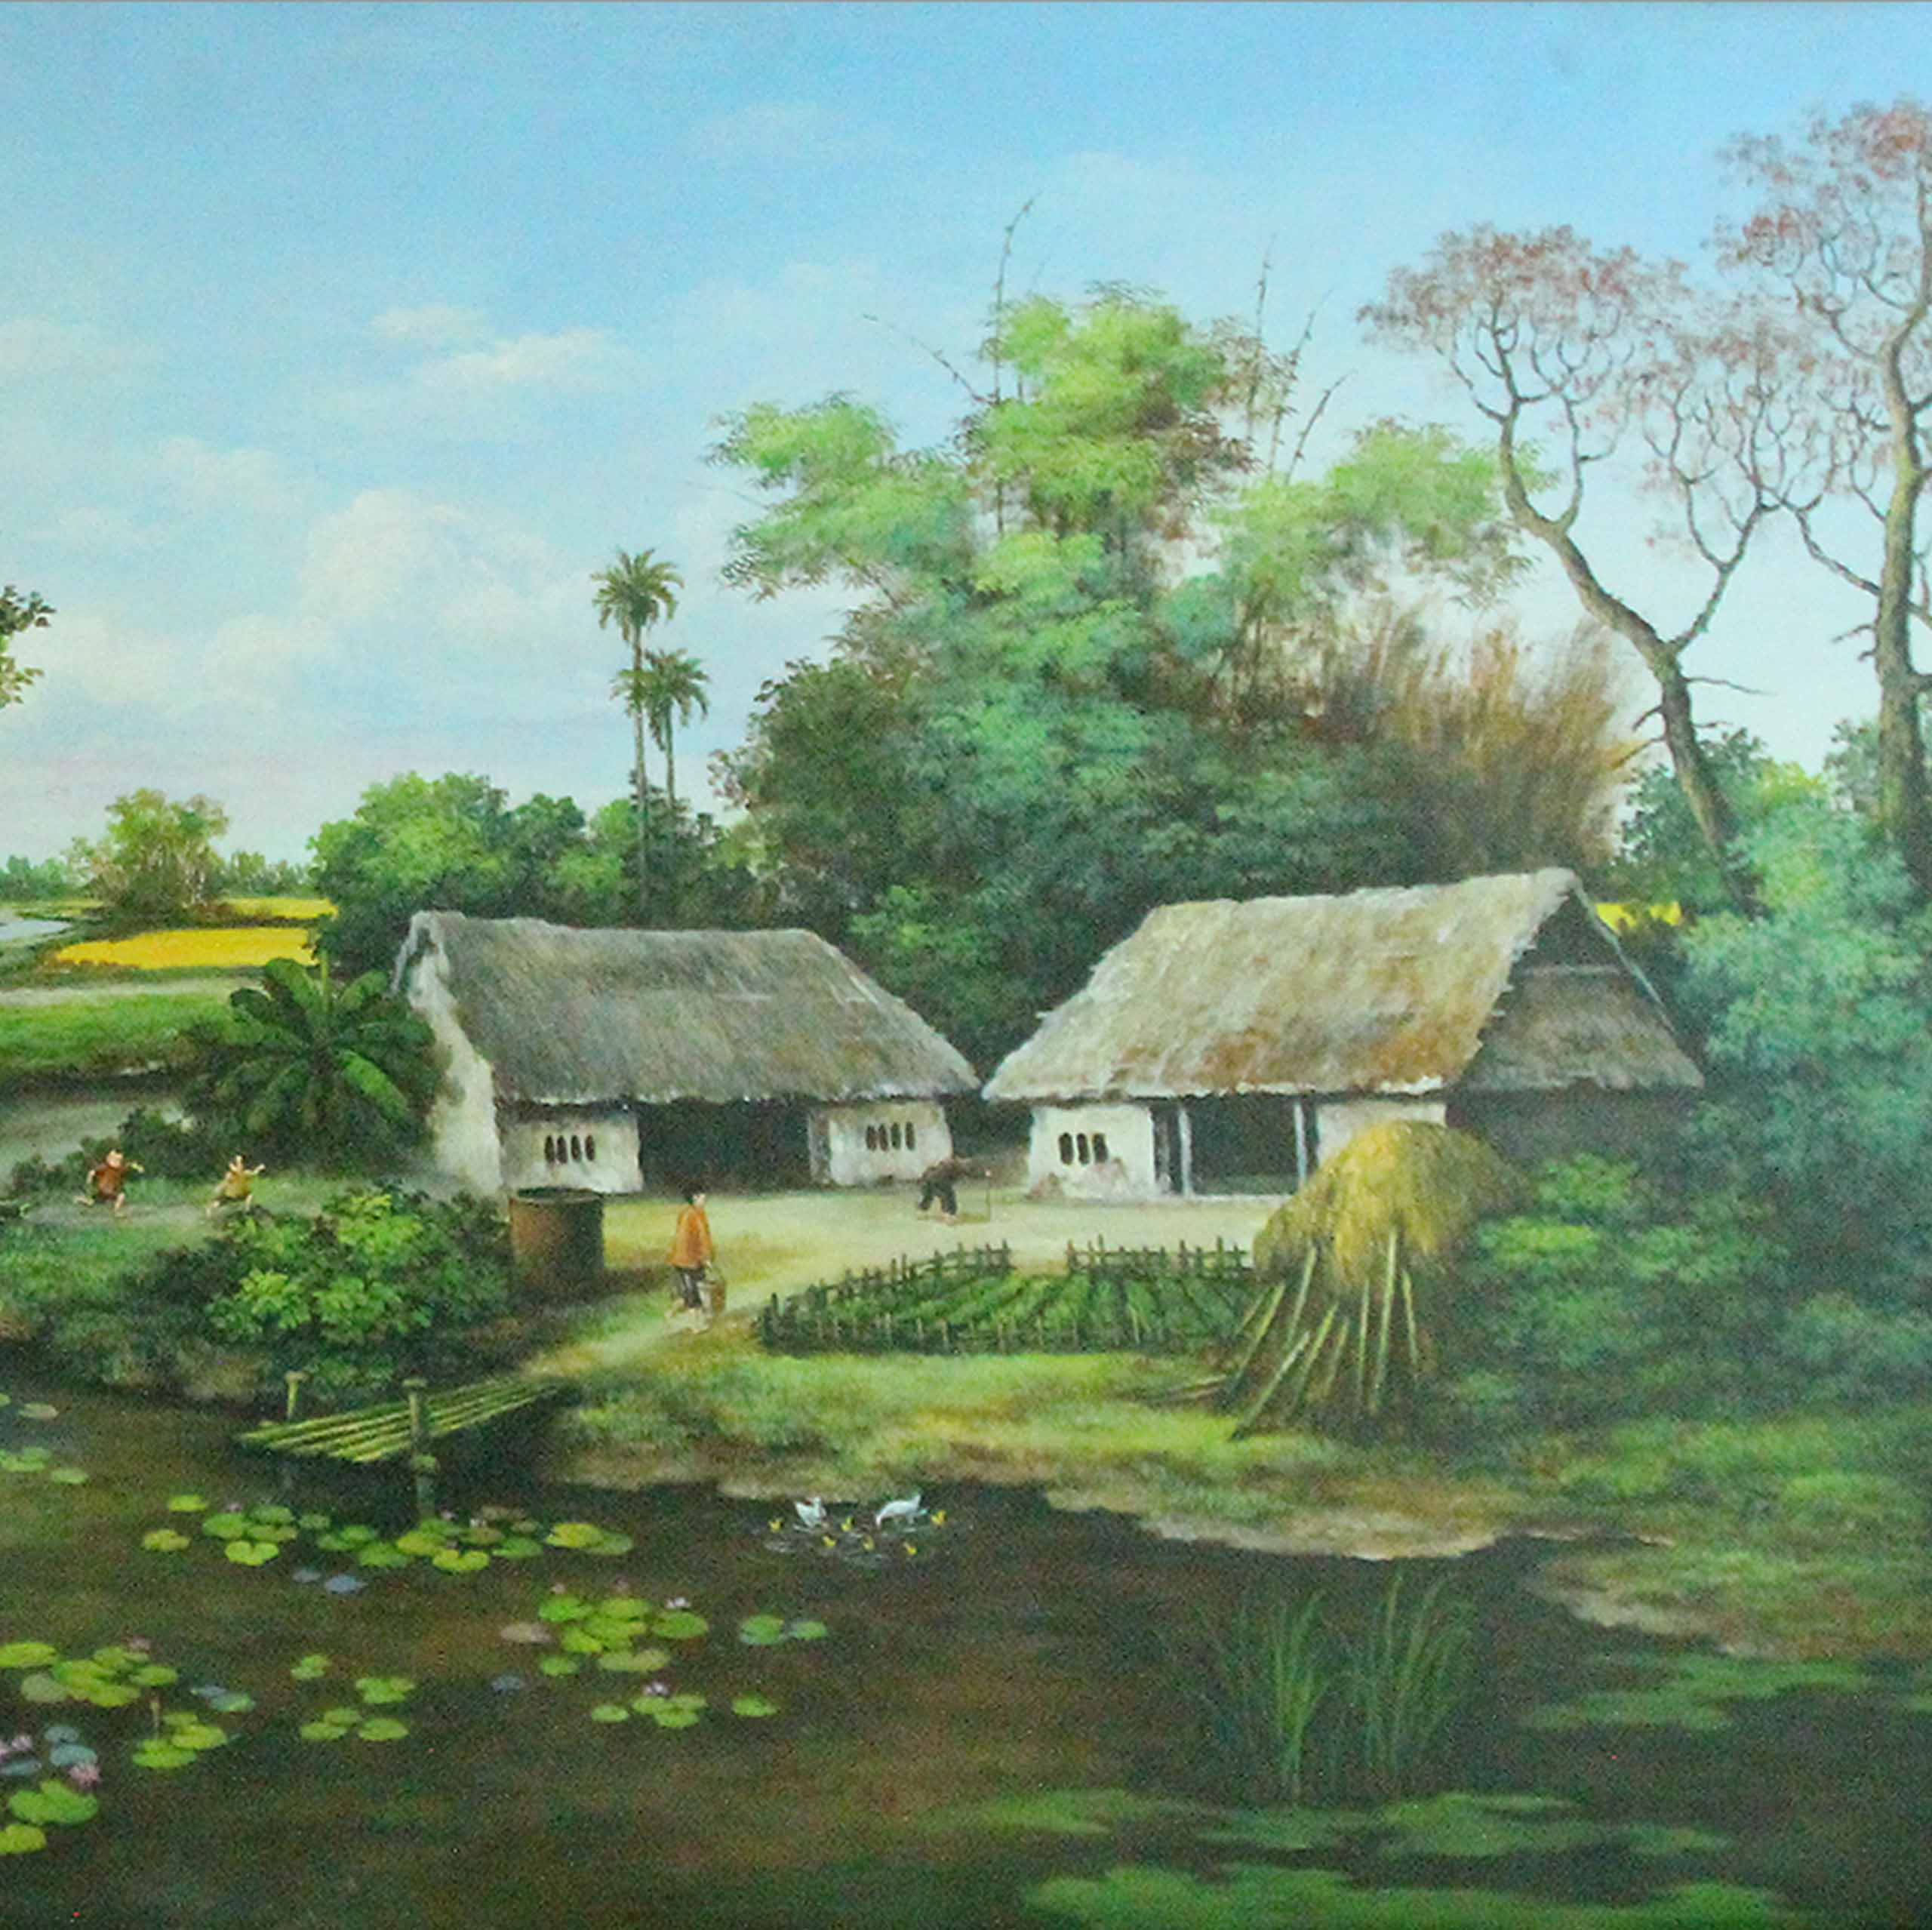 Tranh sơn dầu phong cảnh làng quê Việt nam - TSD23LHAR - LEHAIS ART